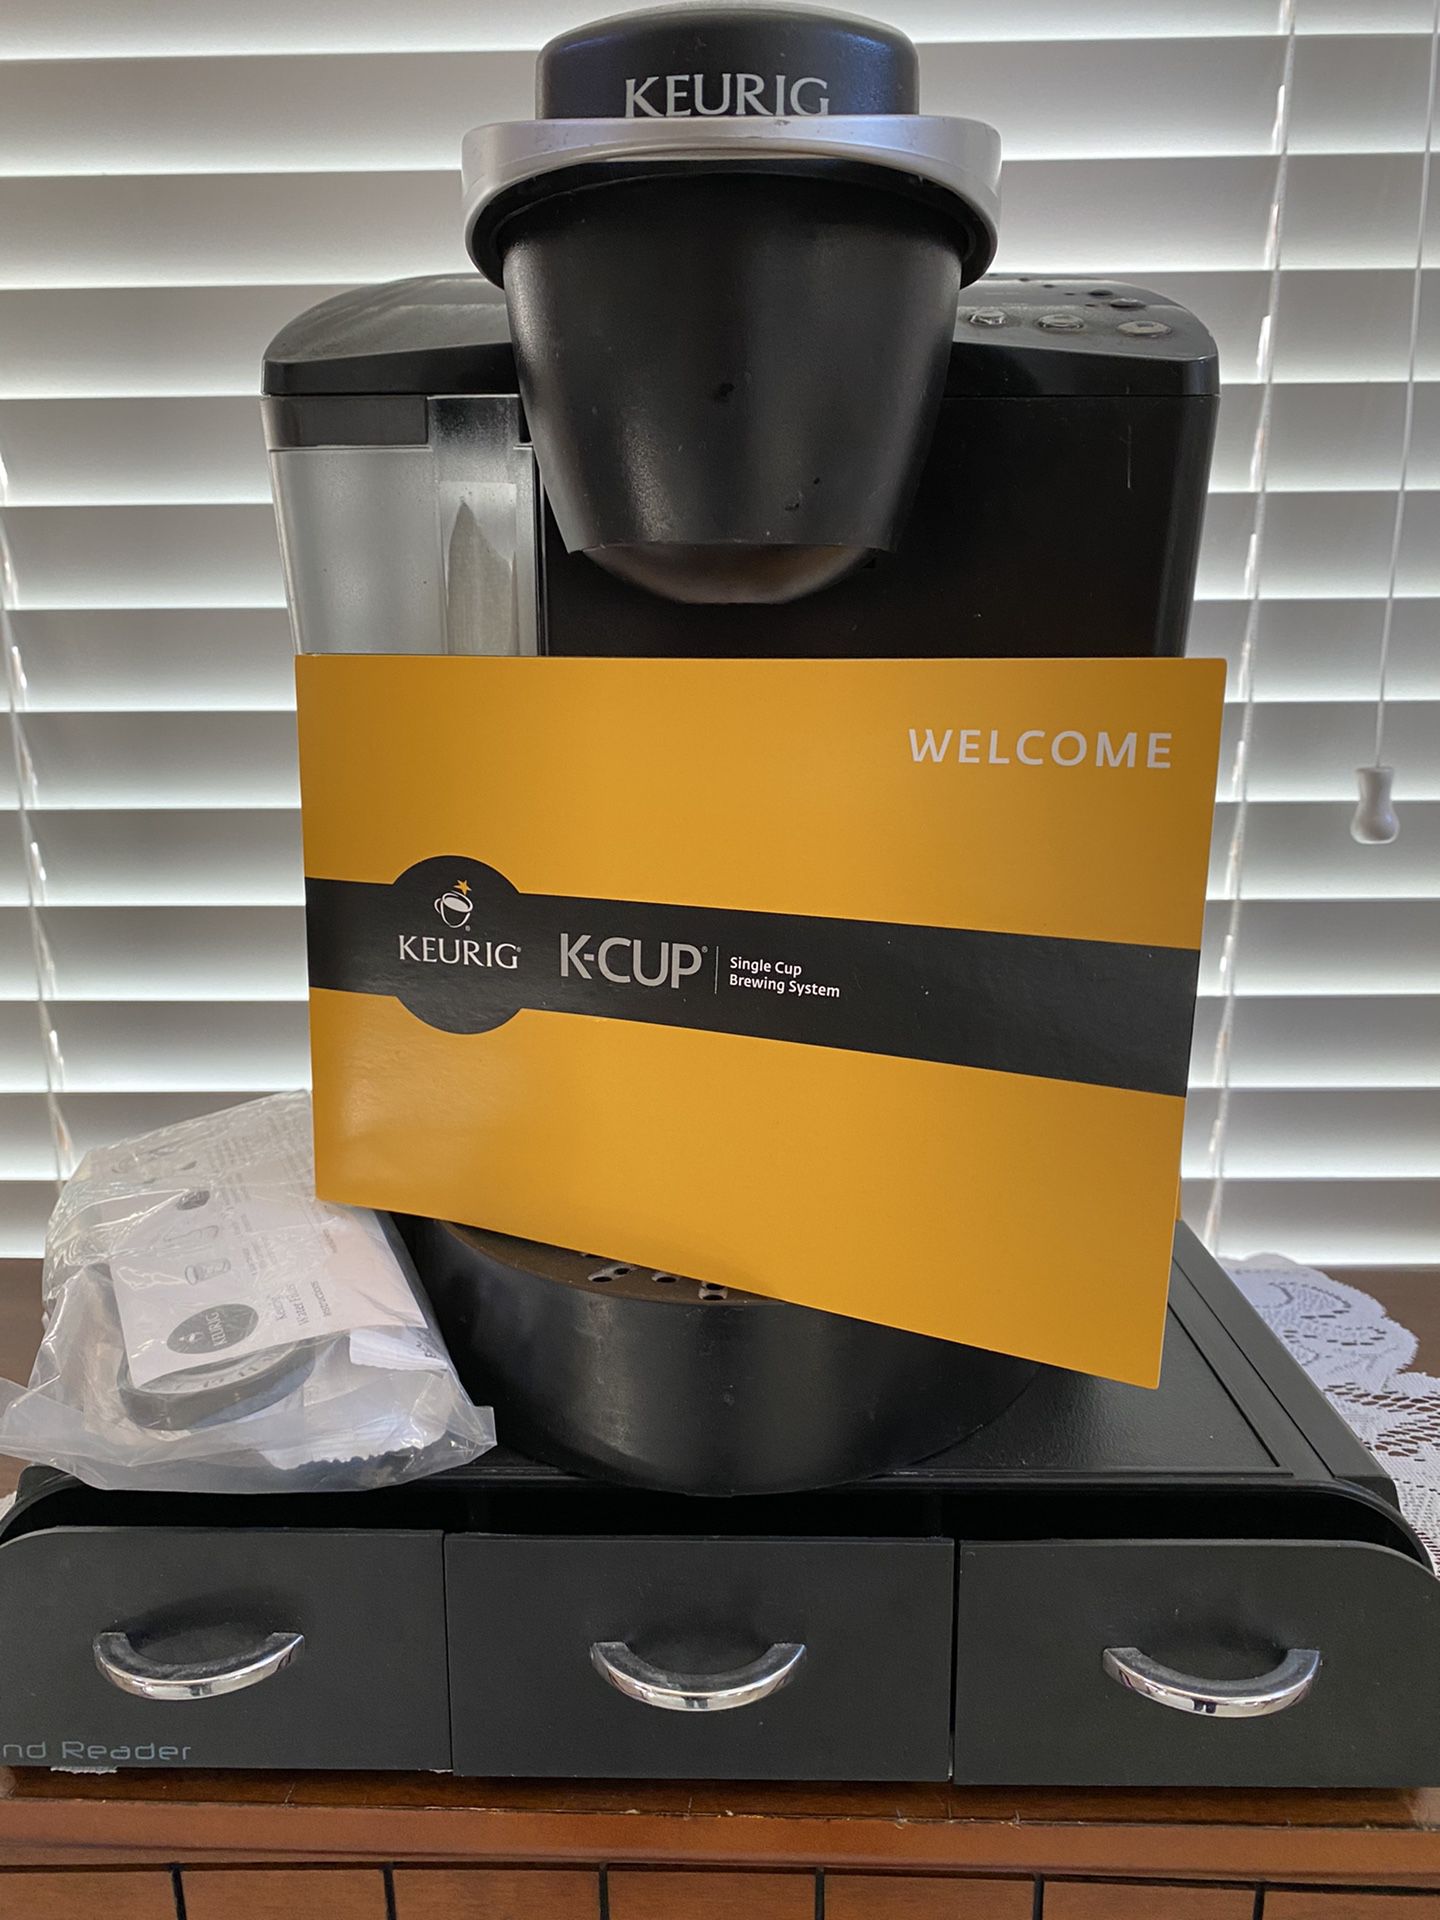 Keurig Coffee Maker & K-cup Storage